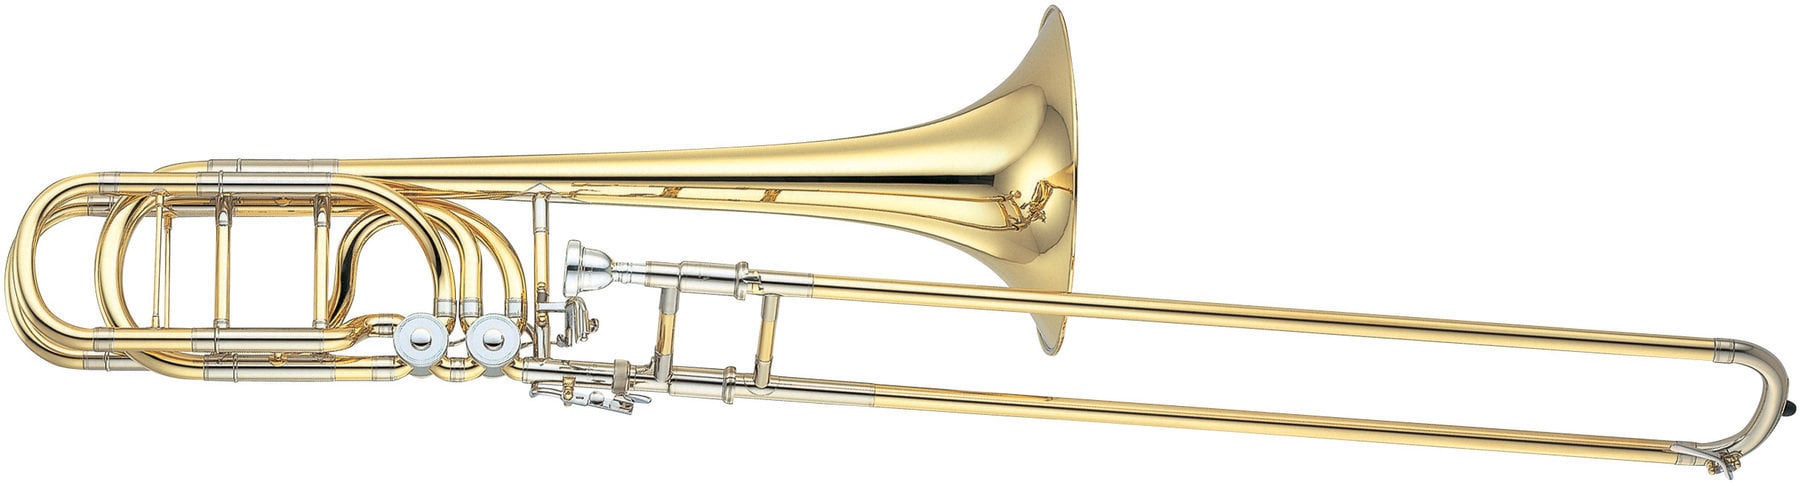 Bas trombon Yamaha YBL 830 Bas trombon